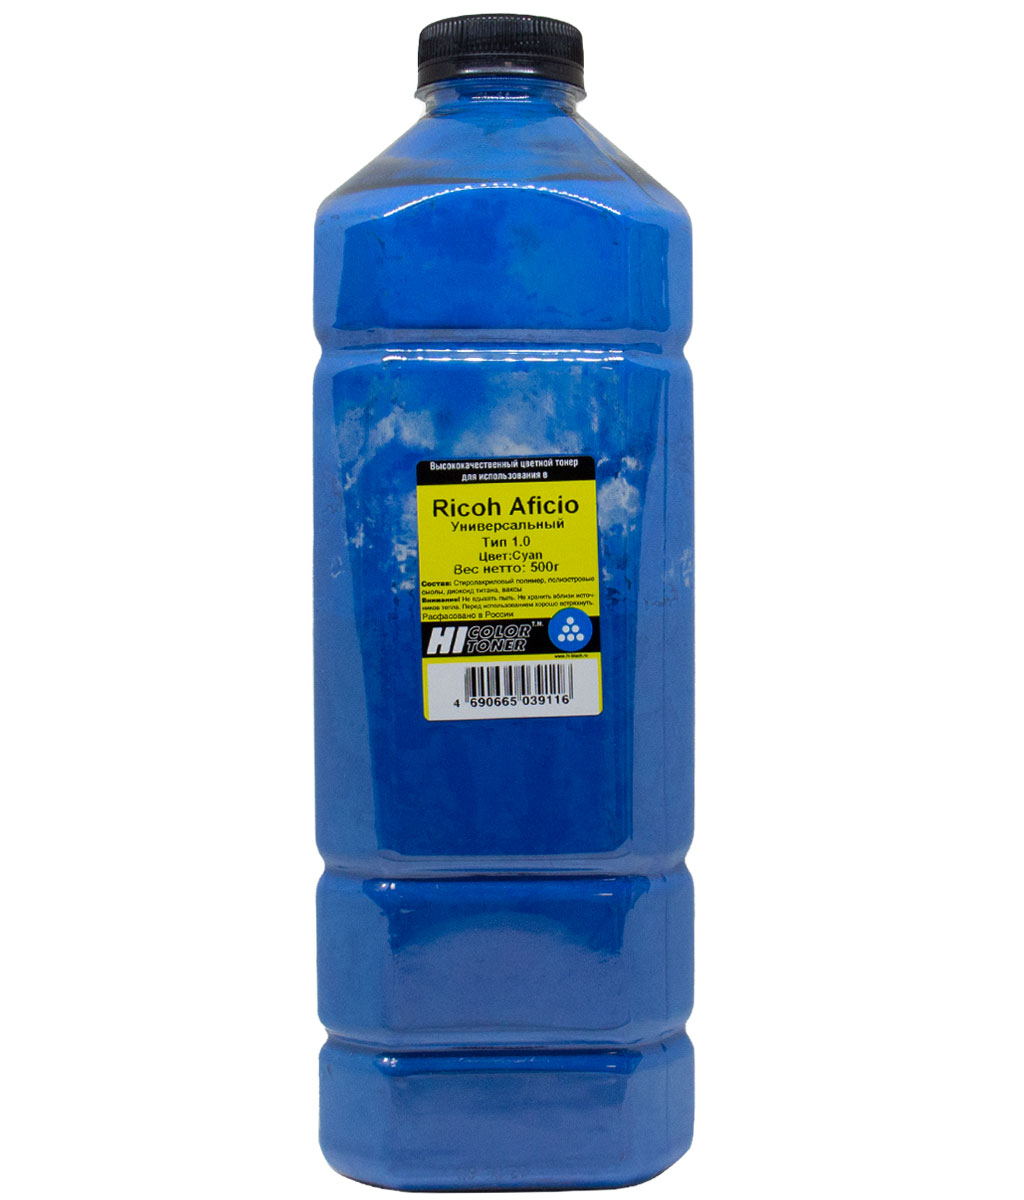 Тонер Hi-Color Тип 1.0, бутыль 500 г, голубой, совместимый для Ricoh Aficio SP-C220/221/222/231/232/242/250/261DNw/311/312/320, Ipsio SP-C241/251/310/320/341/342, универсальный (20111811)